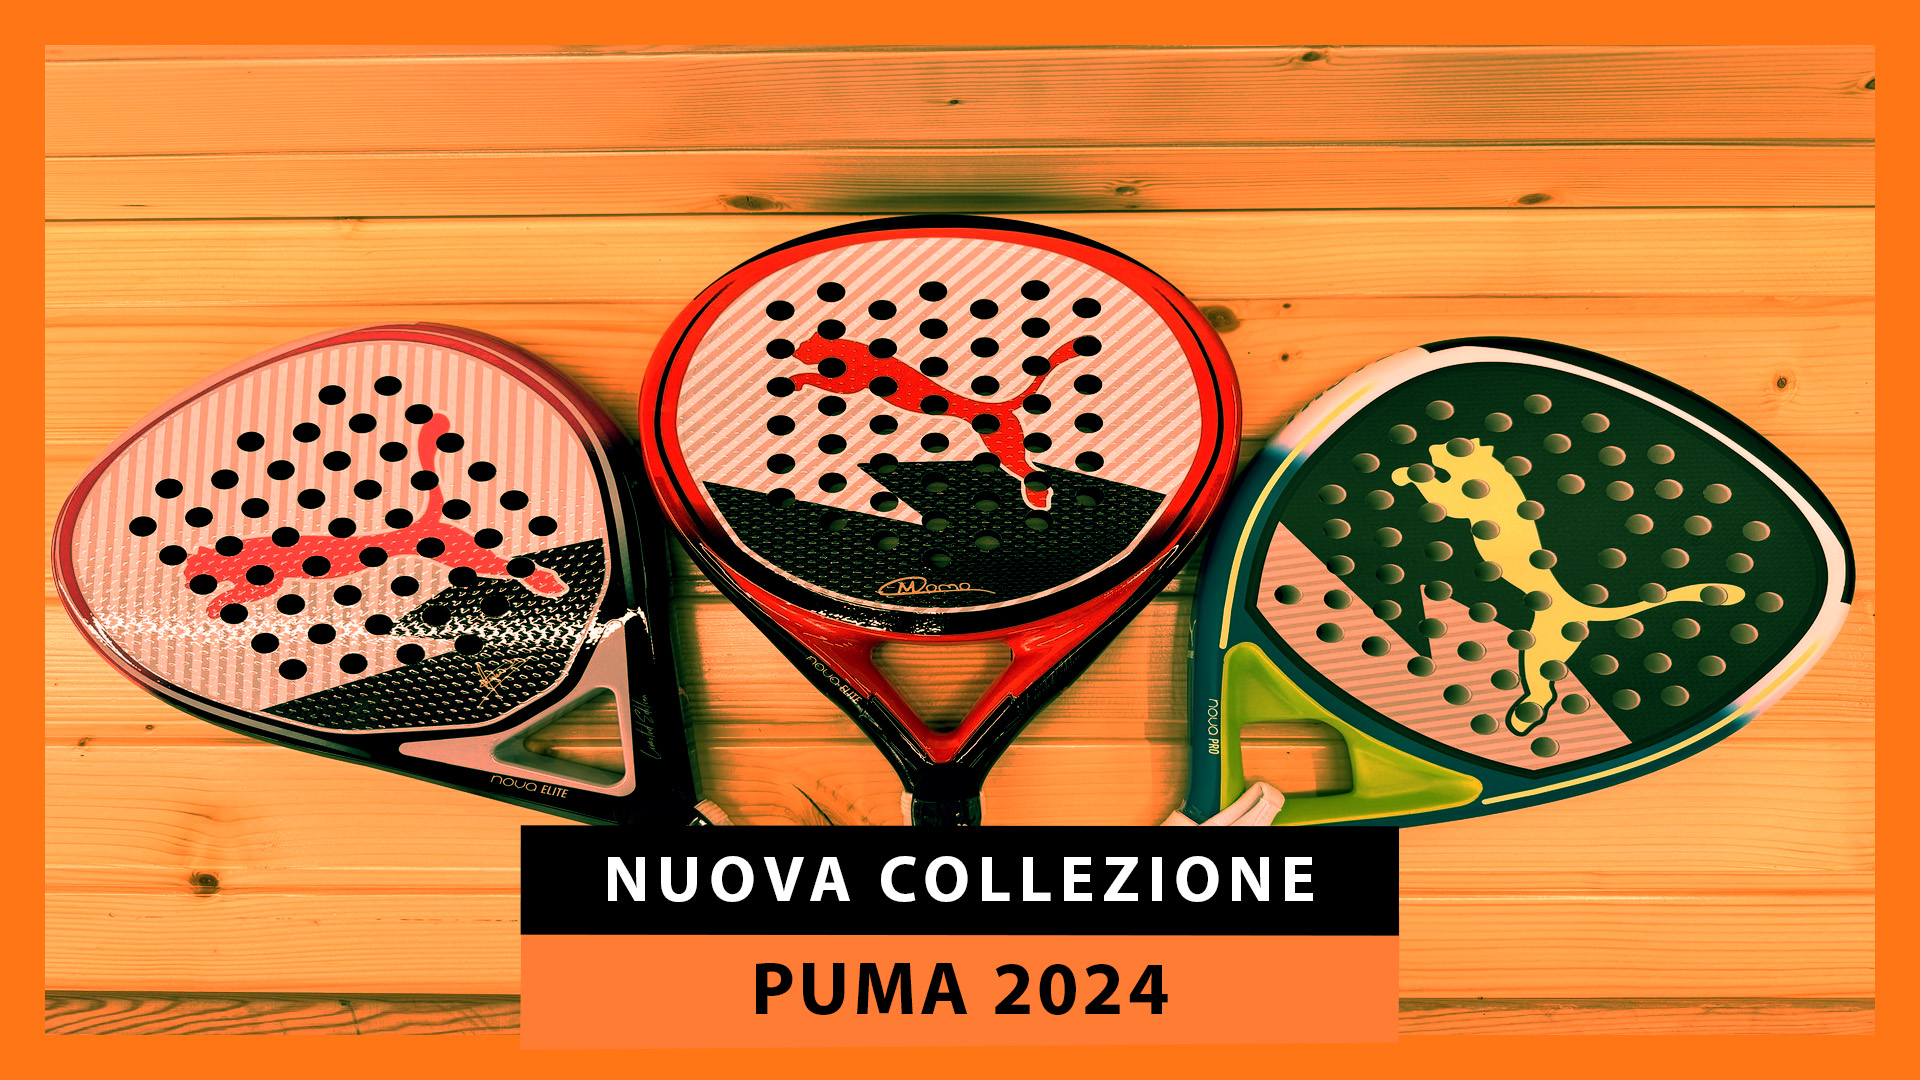 Nuova collezione di racchette da padel Puma 2024: il controllo e la precisione fanno la differenza